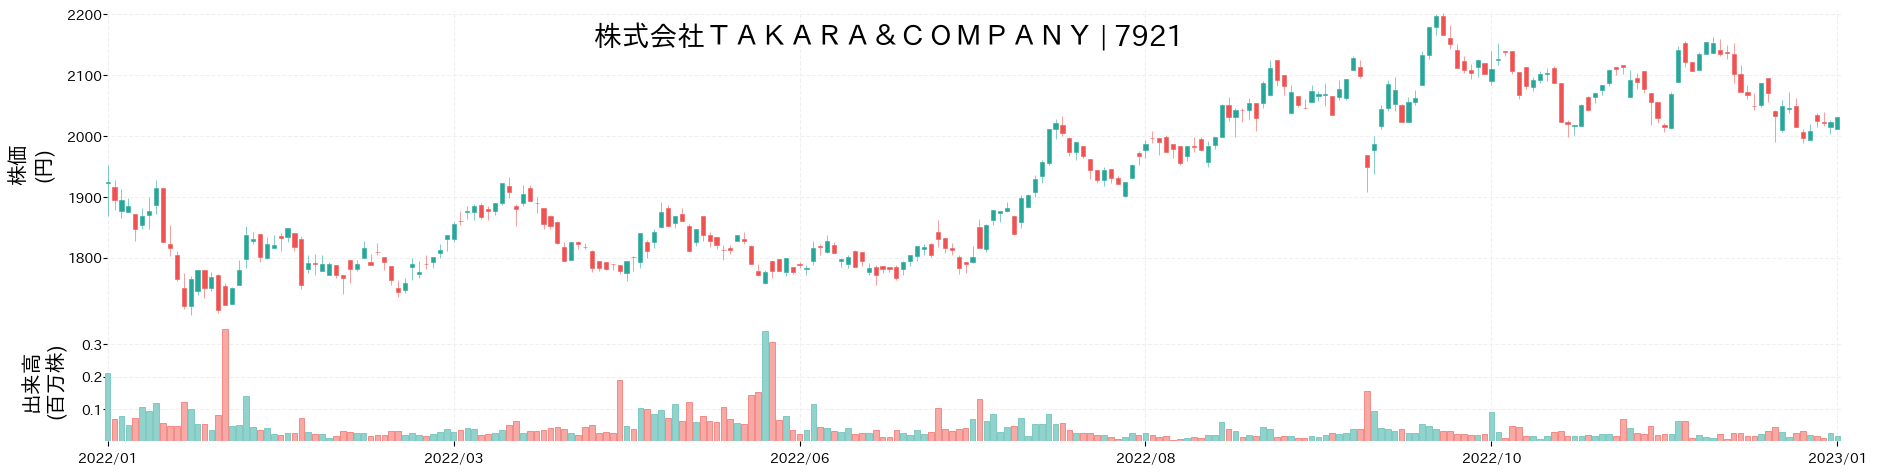 TAKARA & COMPANYの株価推移(2022)